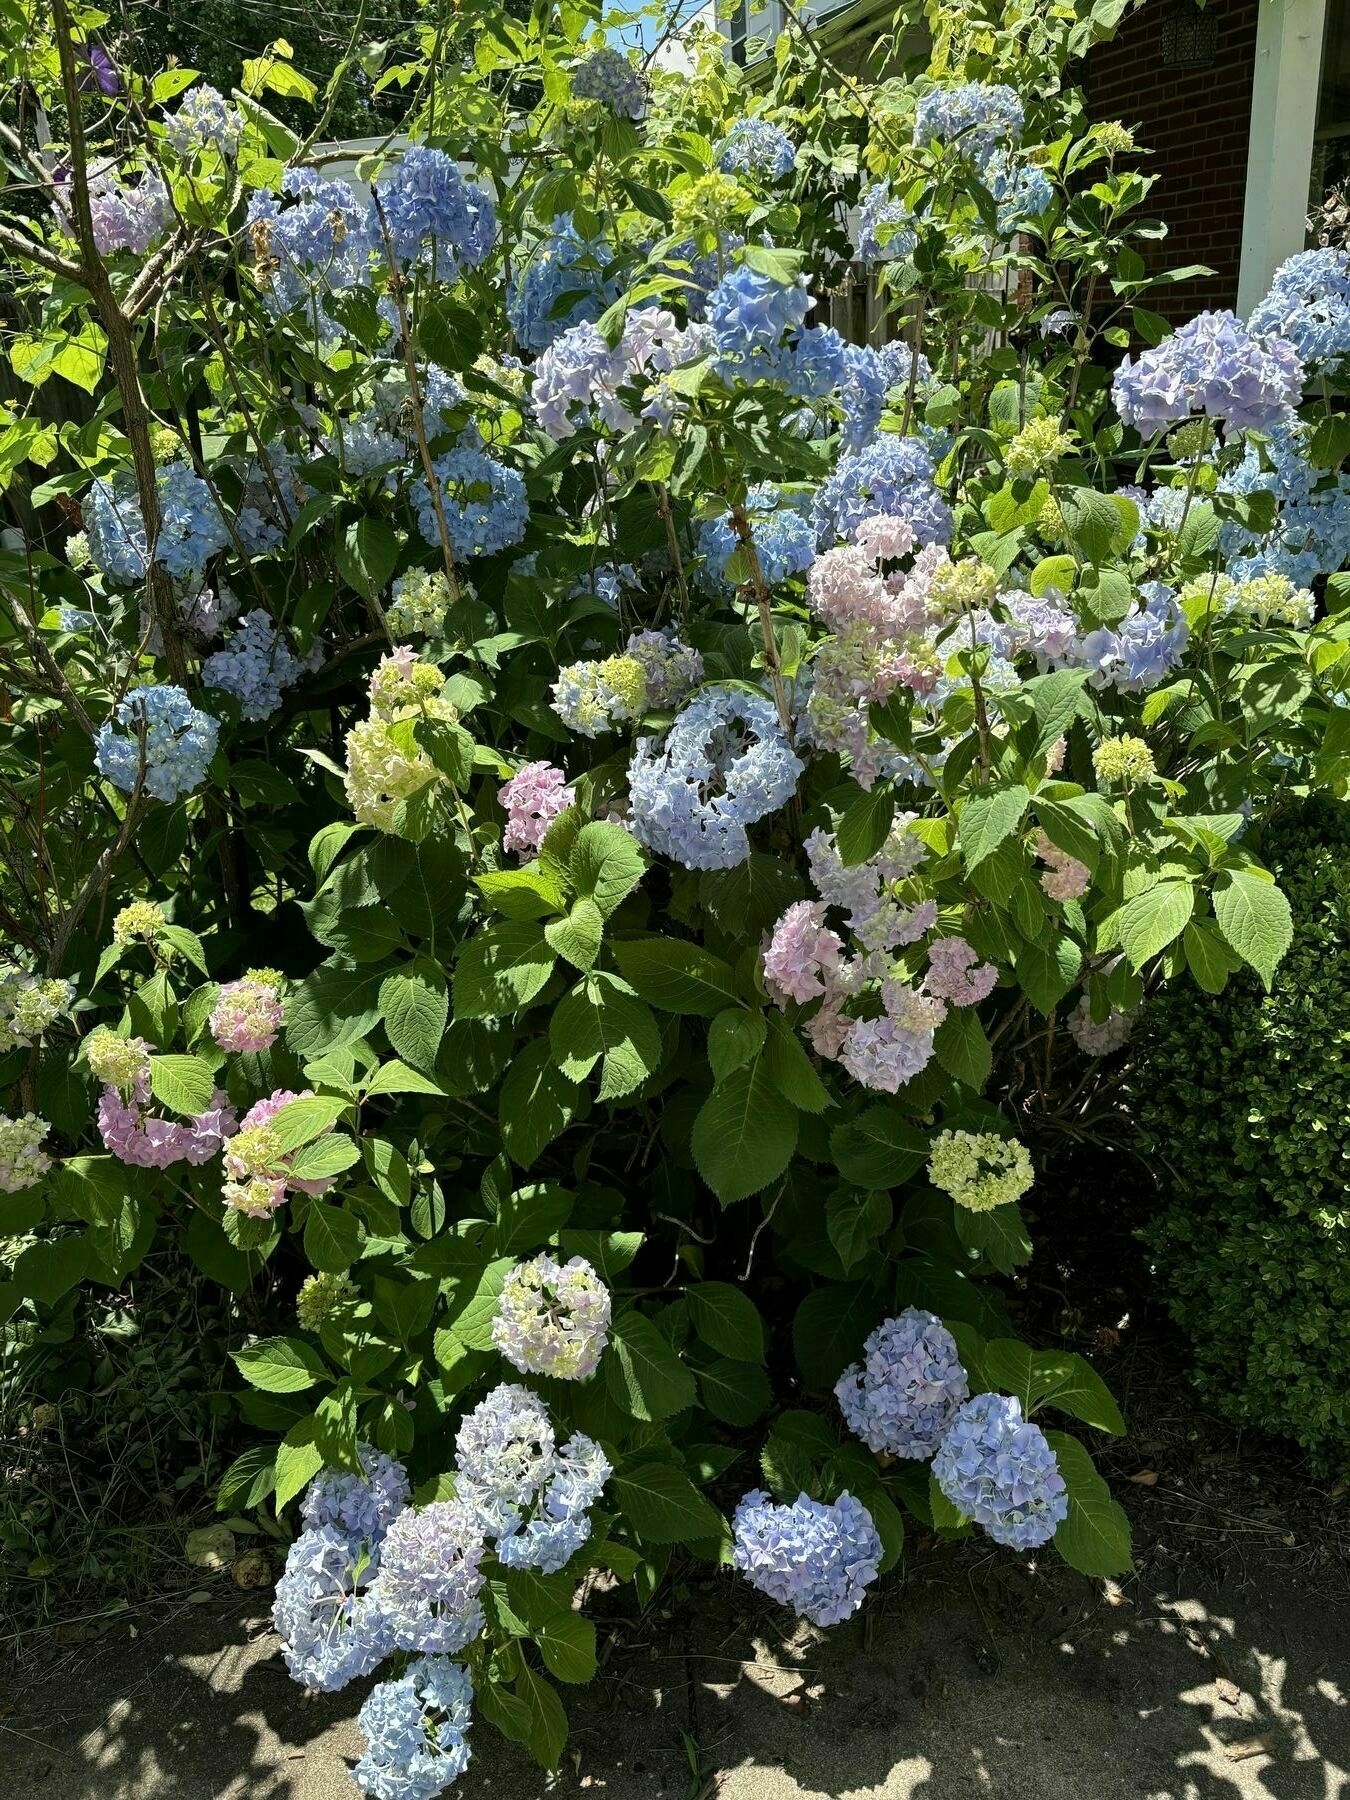 hydrangea in bloom